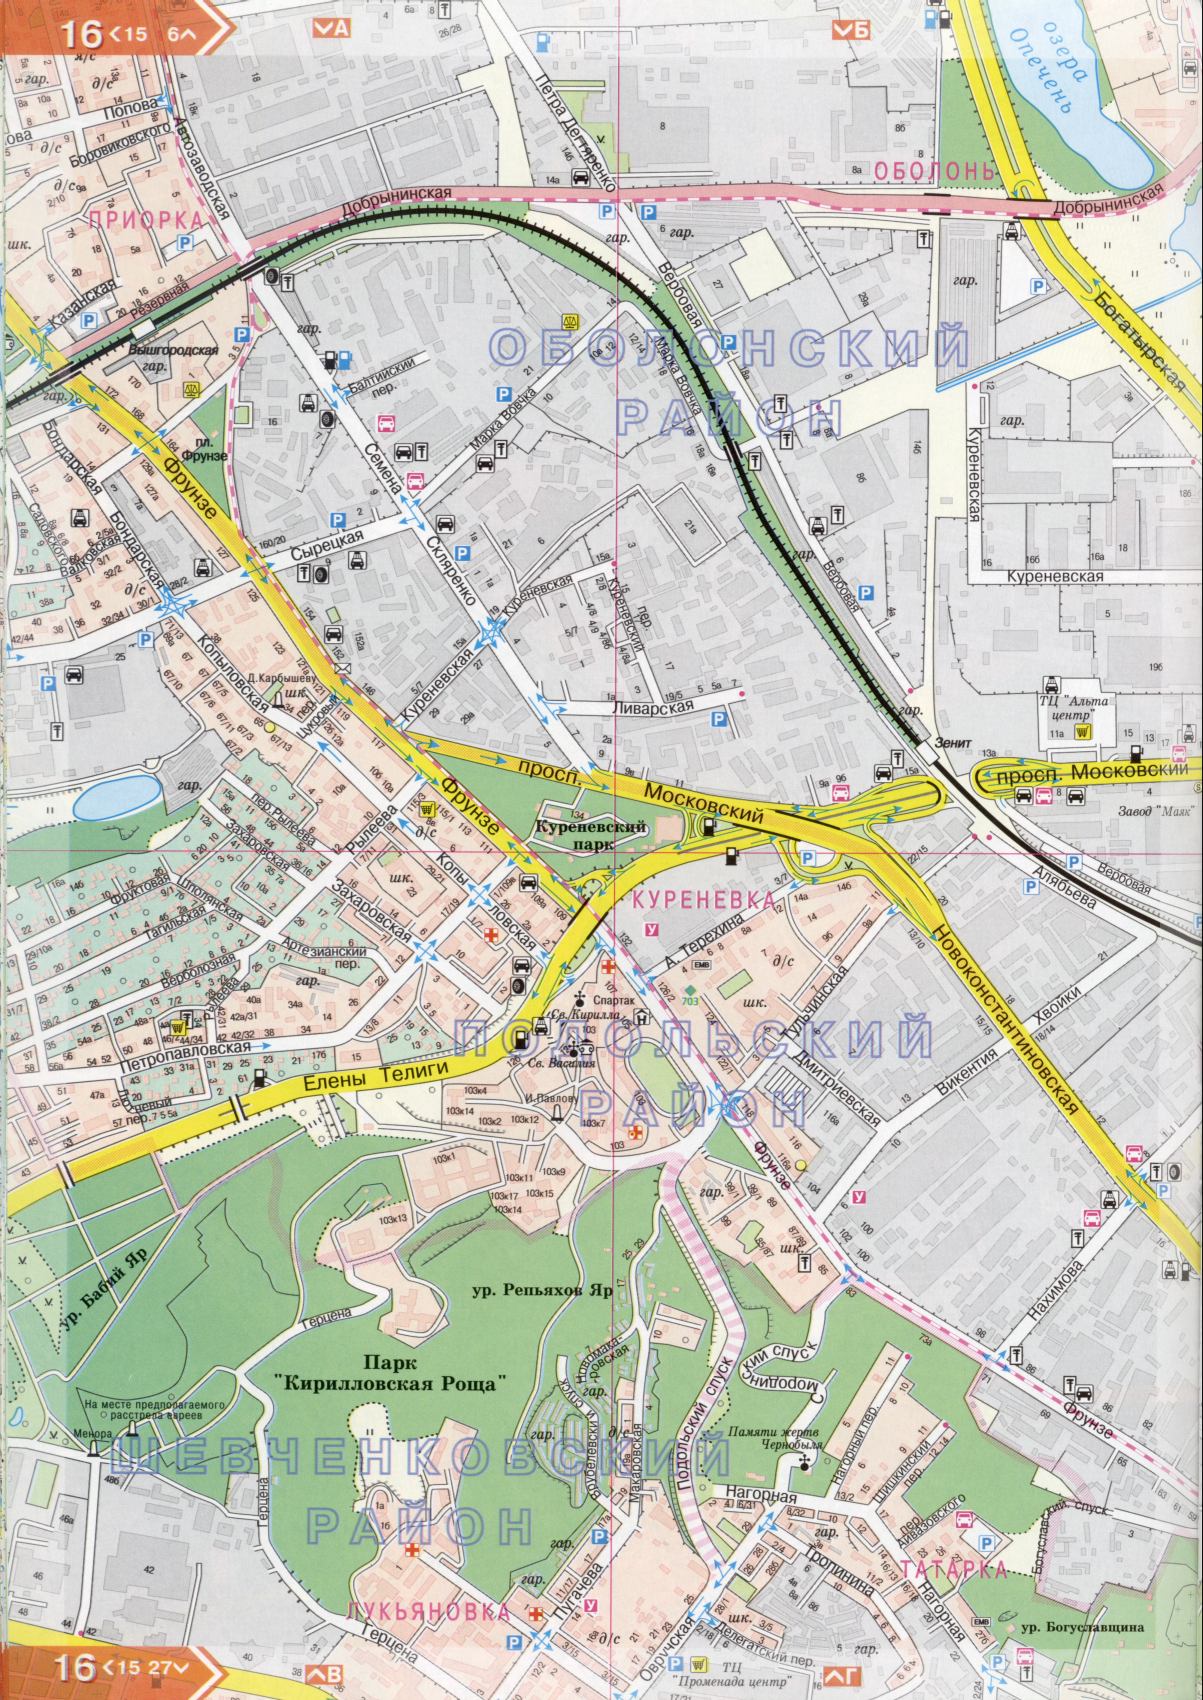 Kiev carte détails 1cm = 150m pour 45 feuilles. Carte de Kiev de l'atlas des routes. Télécharger une carte détaillée, D1 - Podolsk district de Kiev